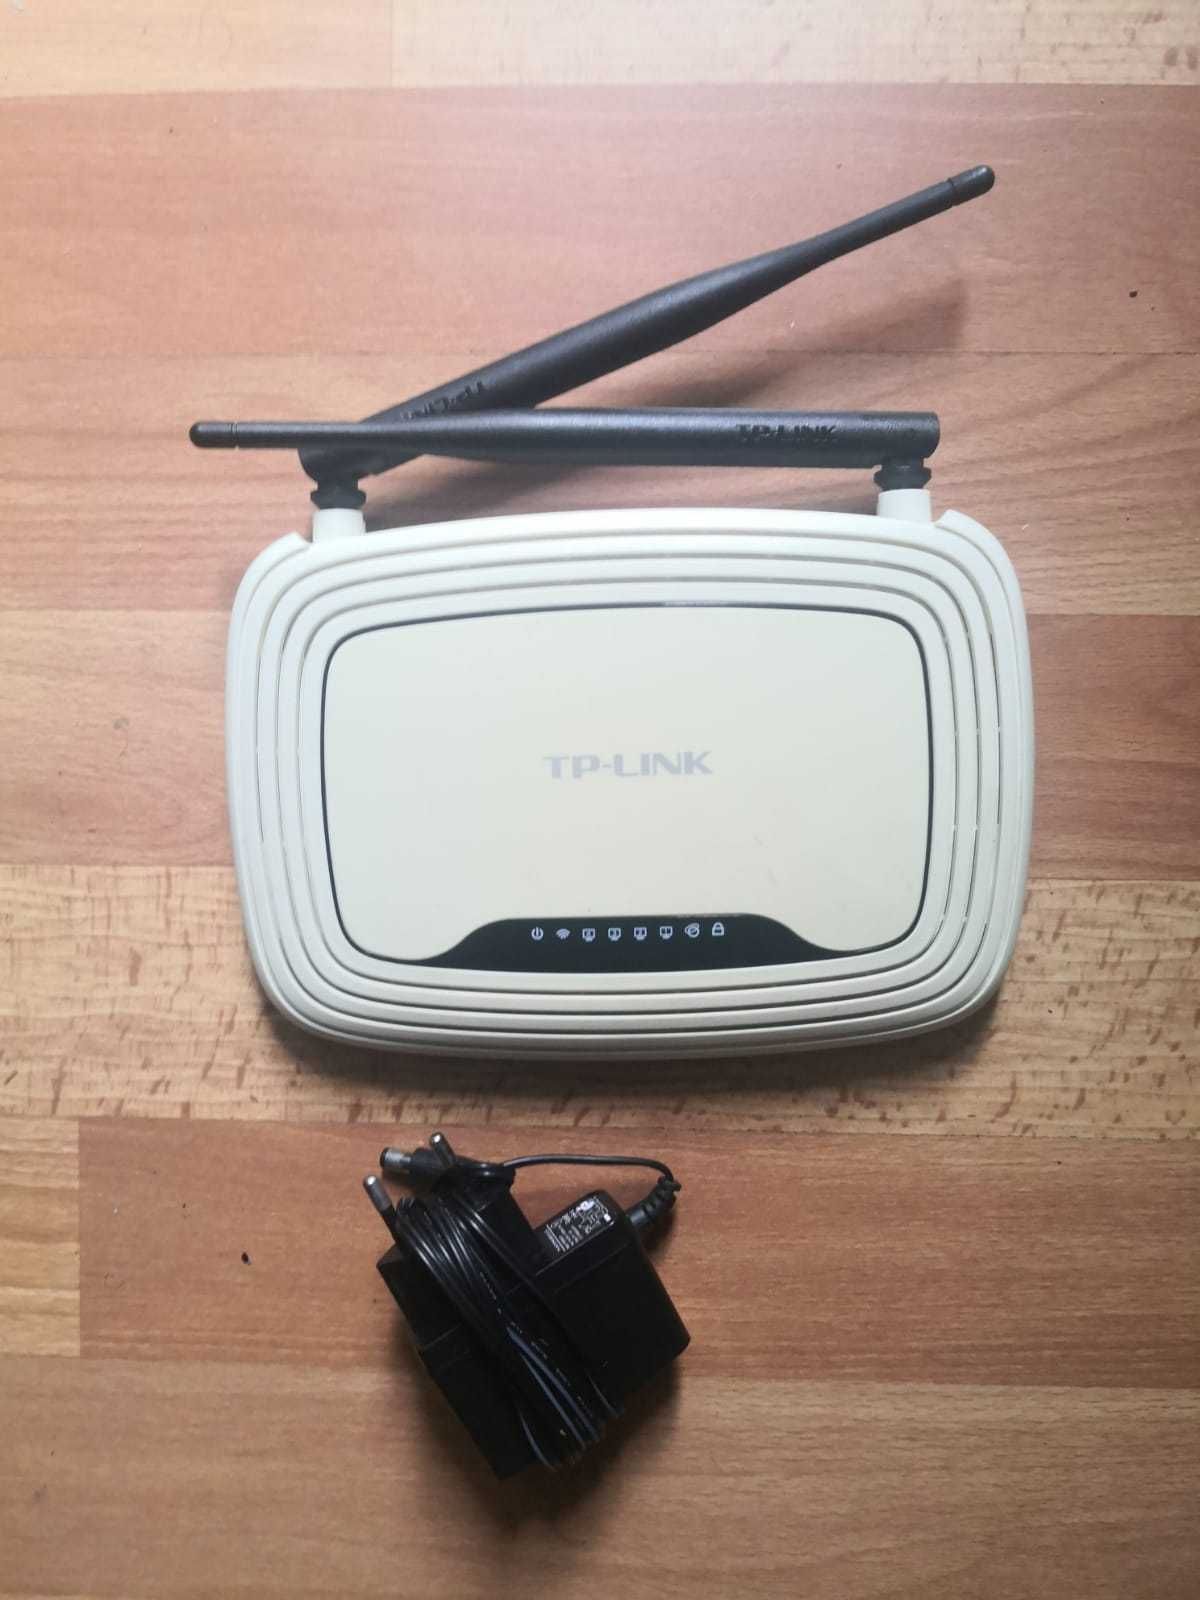 Vand router TP-LINK TL-WR841N